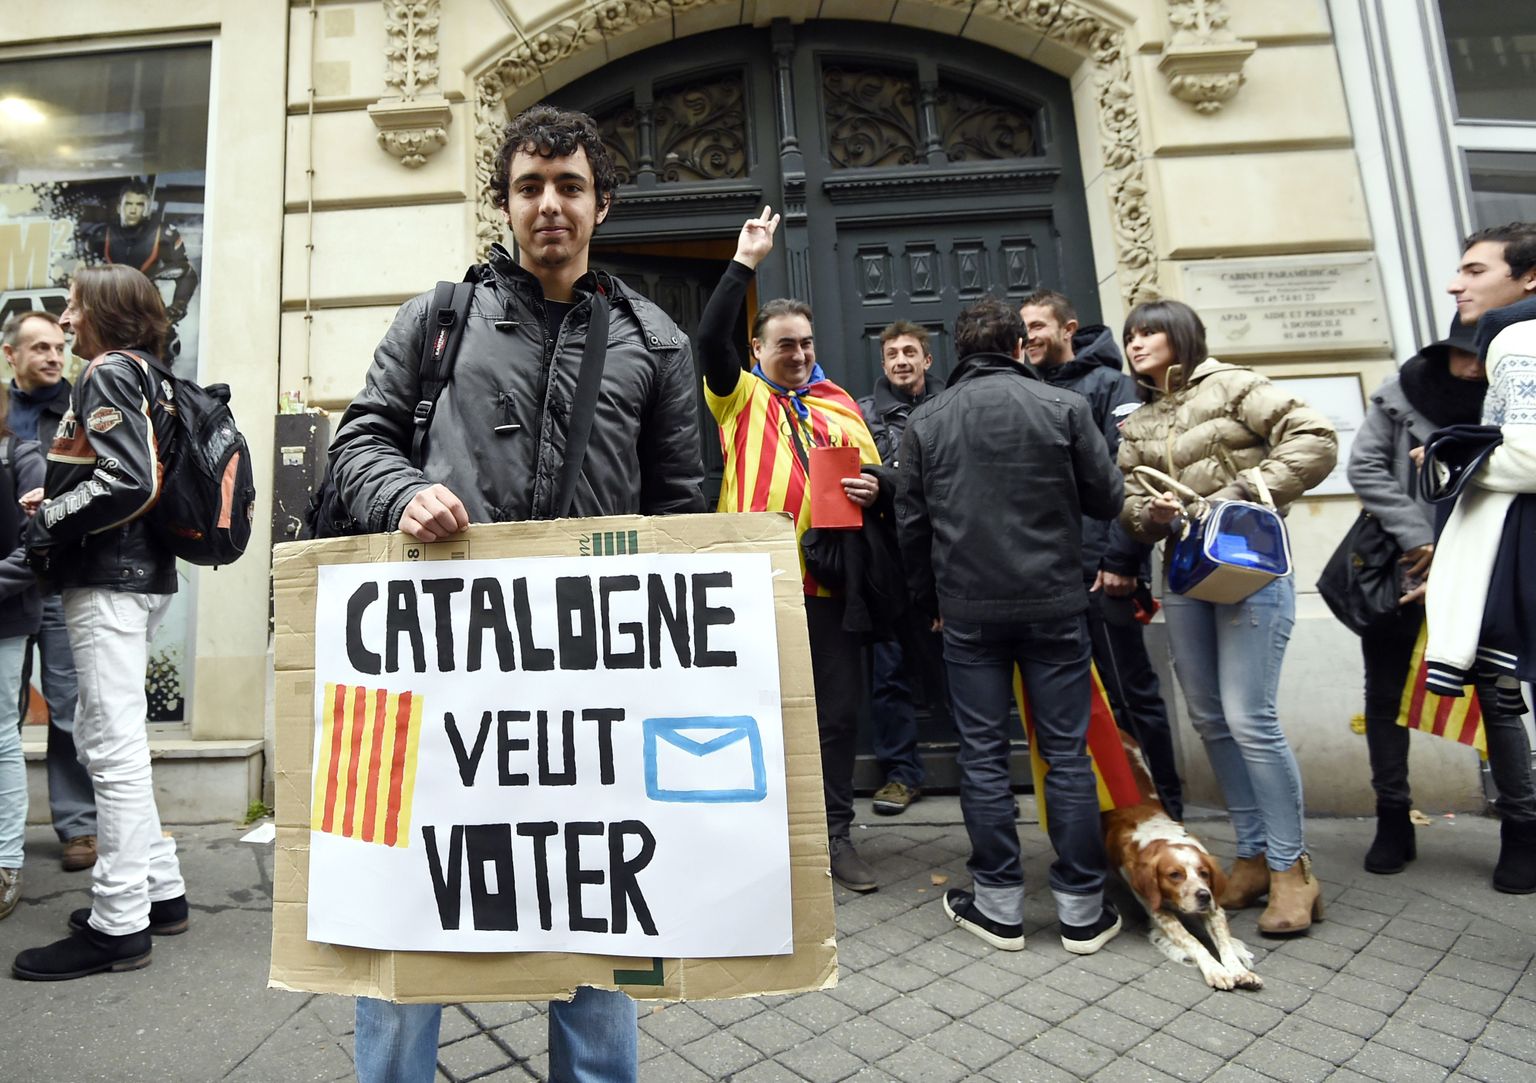 Kataloonia tahab hääletada, kuulutab prantsuskeelne plakat Pariisis asuva Kataloonia esinduse ees.